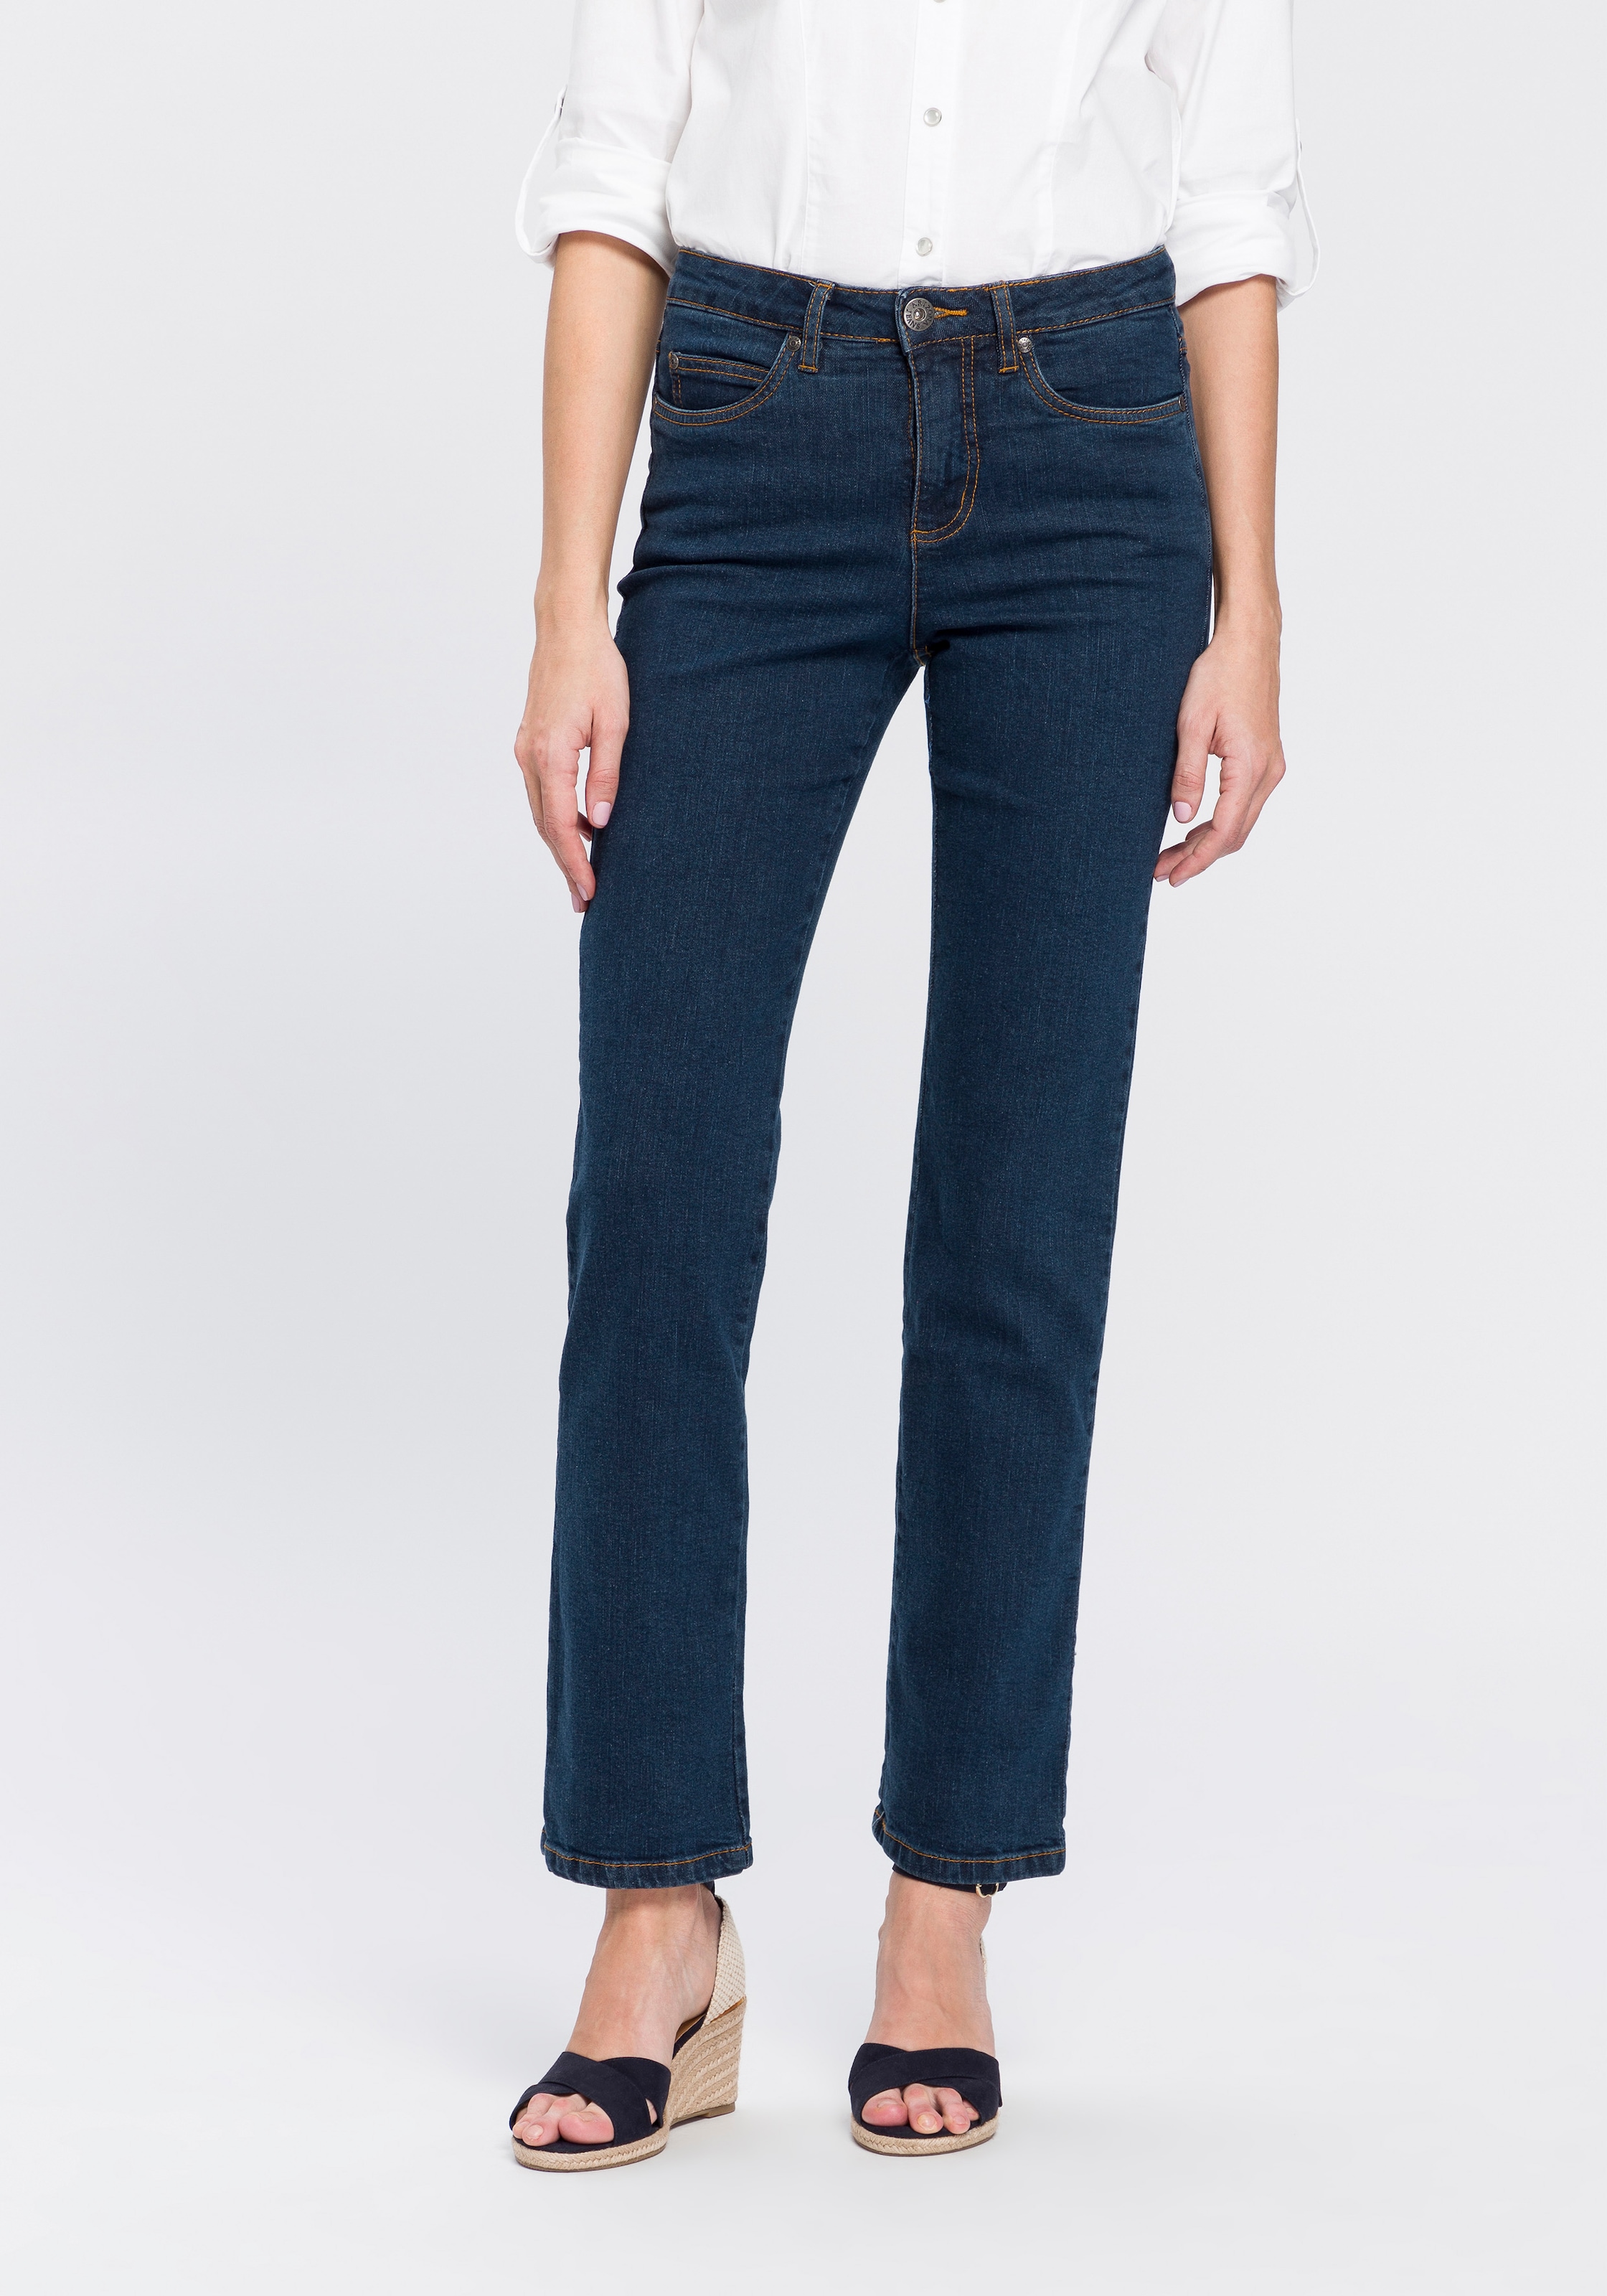 Gerade Jeans »Comfort-Fit«, High Waist